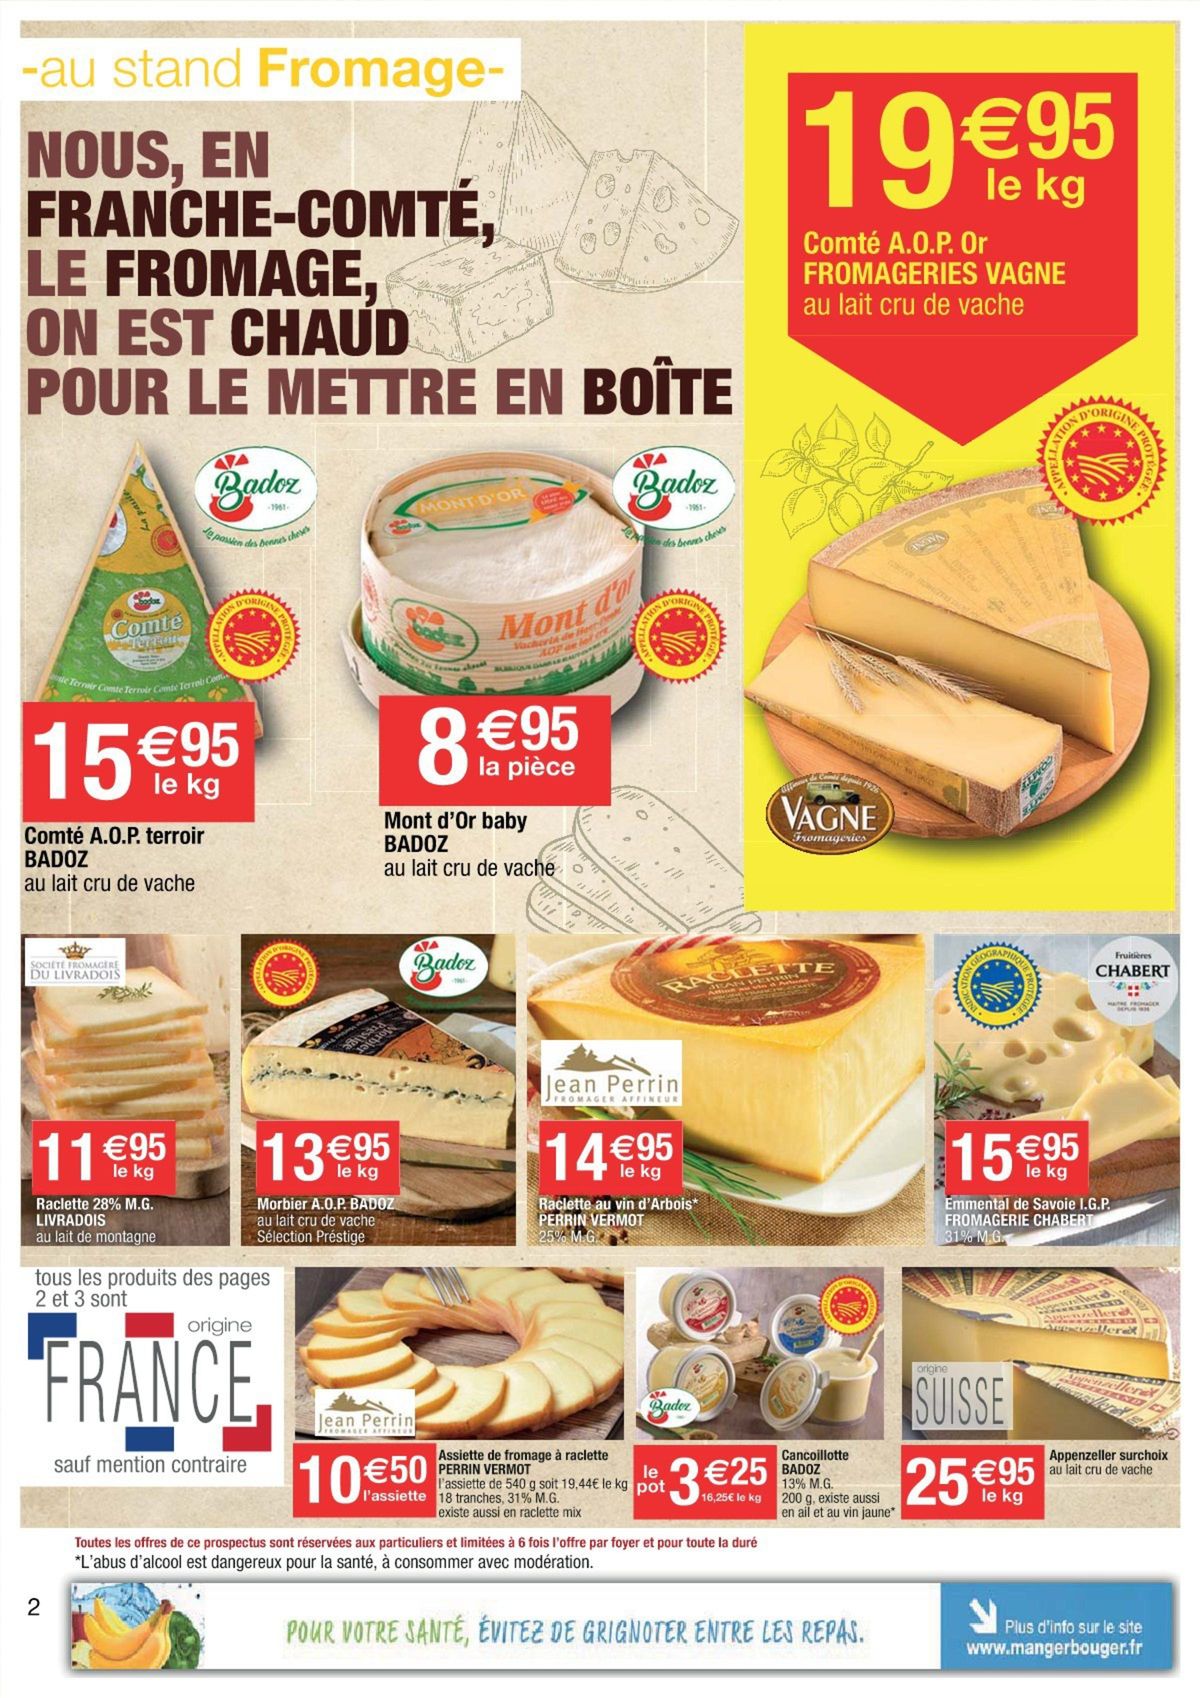 Catalogue Nous, en Franche-Comté, on est fondu de fromage..., page 00002